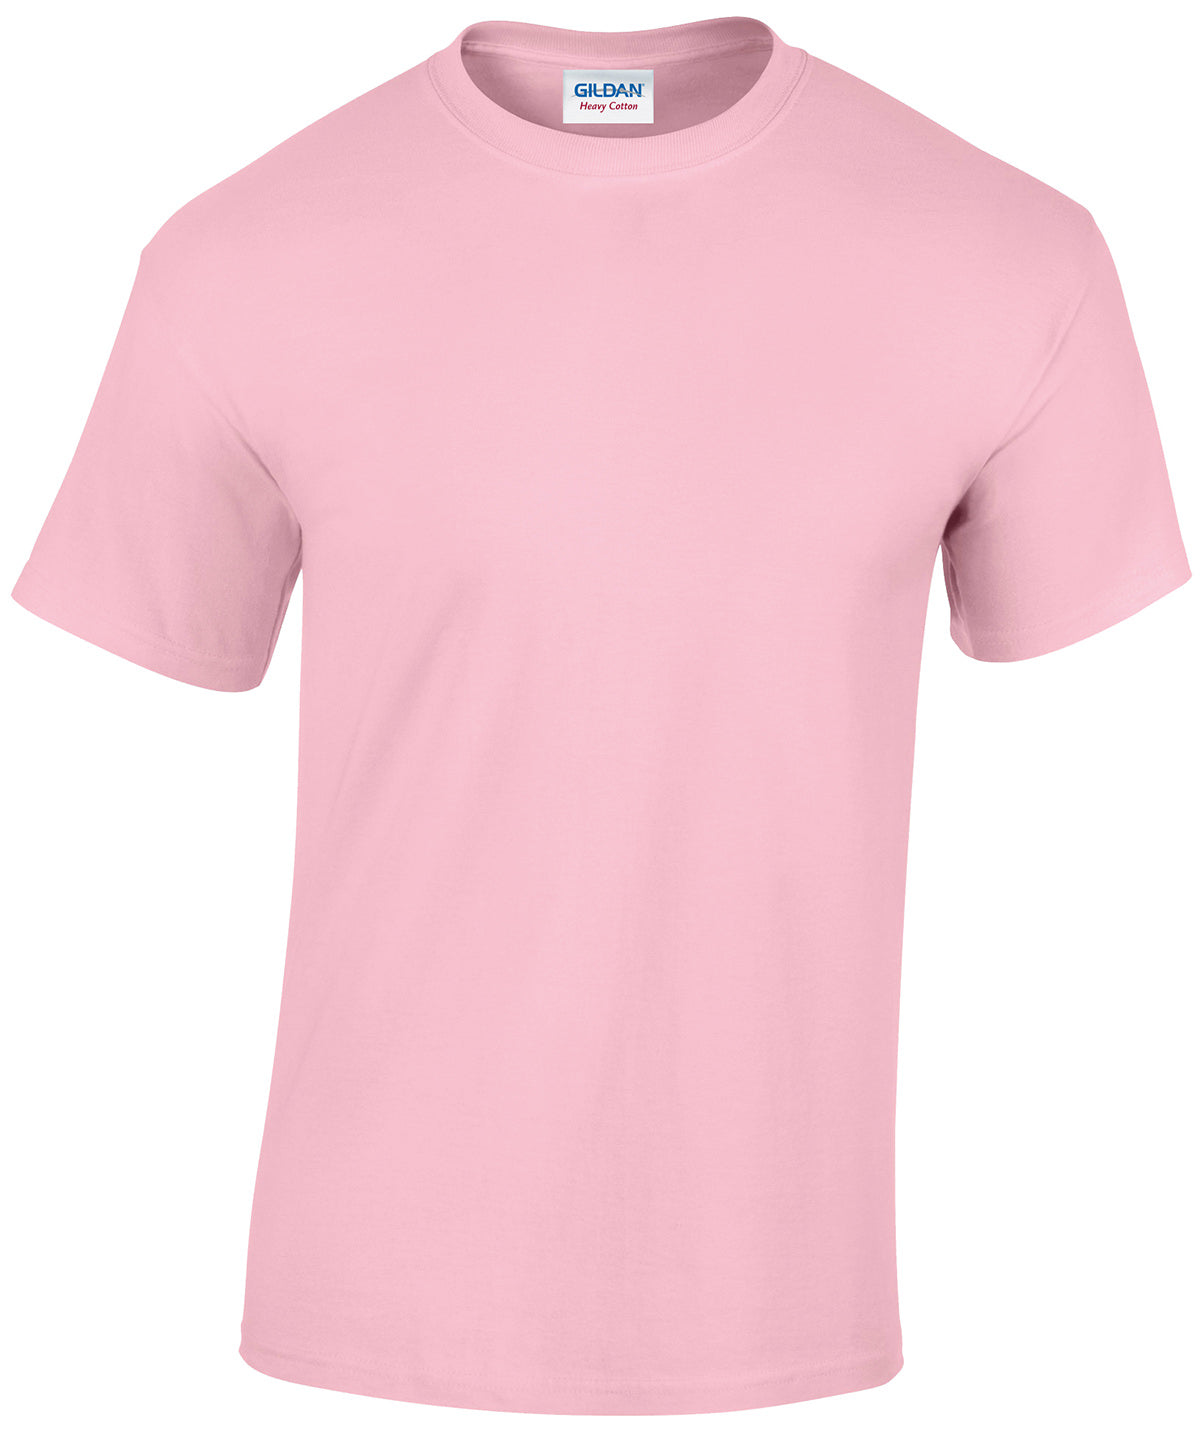 Gildan Heavy Cotton adult t-shirt Light Pink